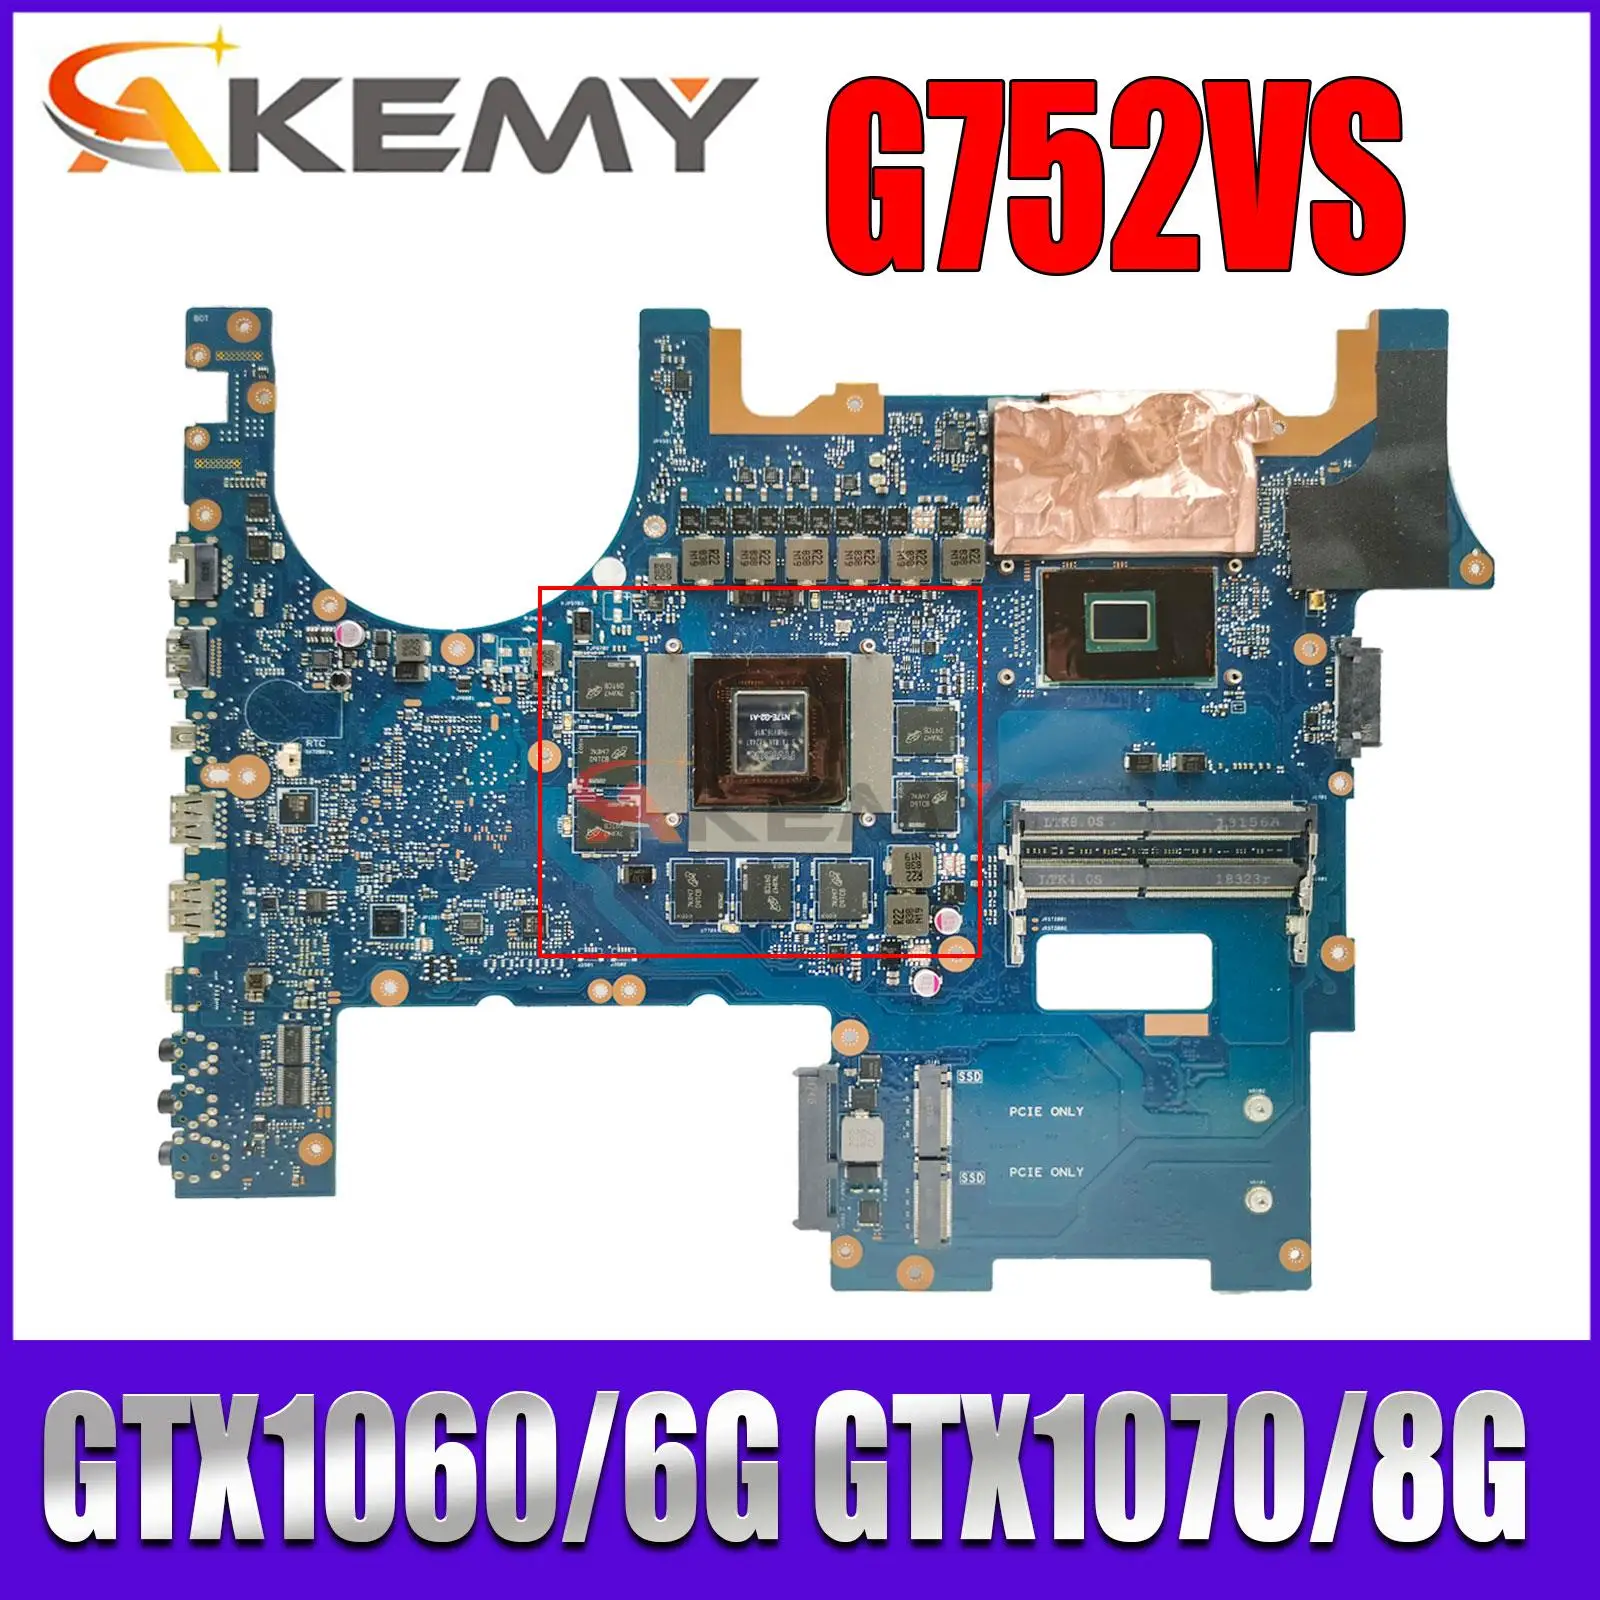 

Notebook Mainboard For ASUS ROG G752VS G752VM G752VSK Laptop Motherboard I7-7700HQ I7-6820HK GTX1060/6G GTX1070/8G DDR4